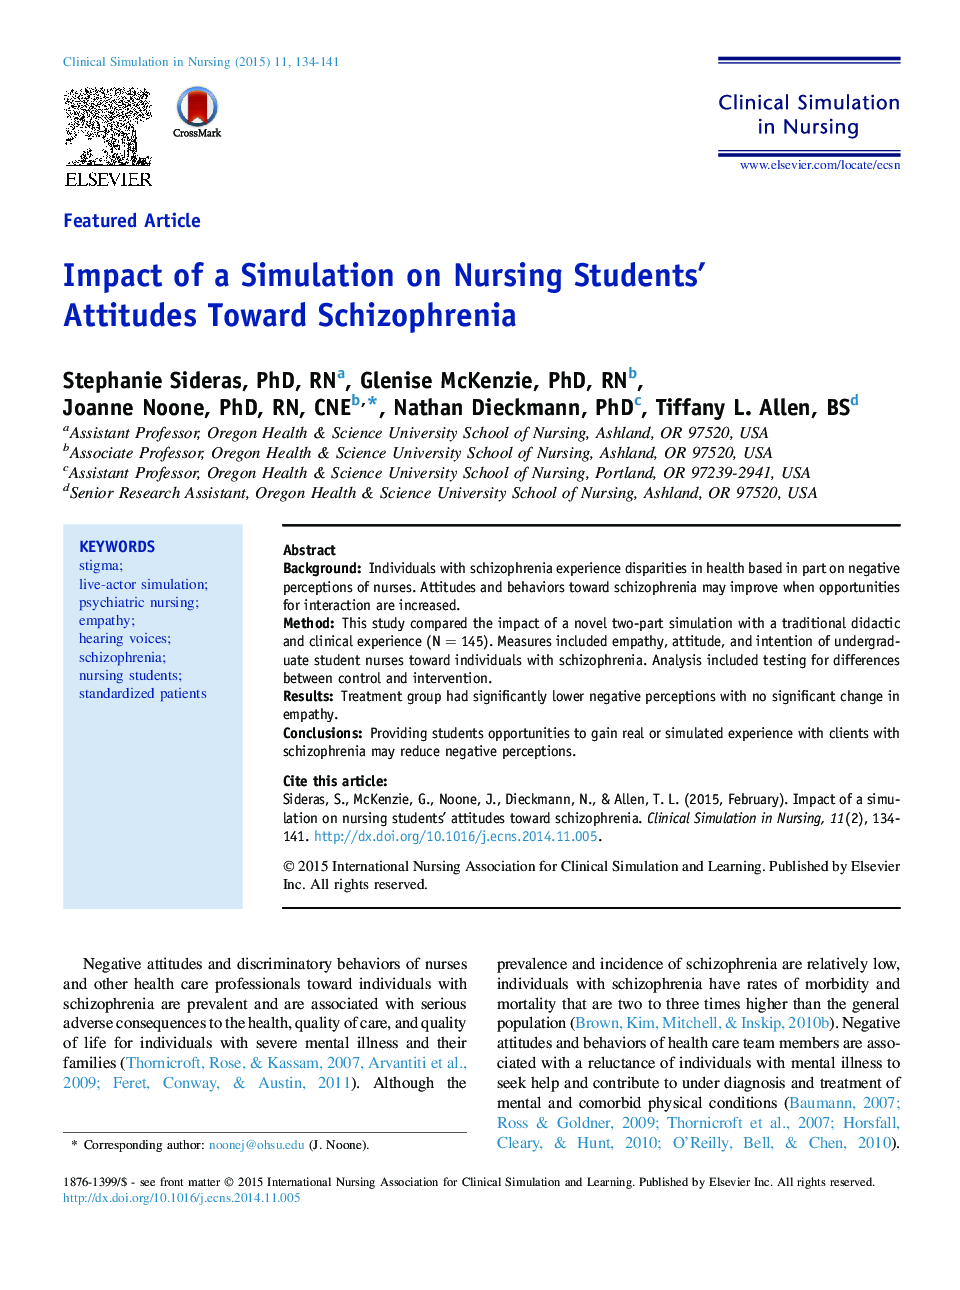 تاثیر شبیه سازی در نگرش دانشجویان پرستاری نسبت به اسکیزوفرنیا 